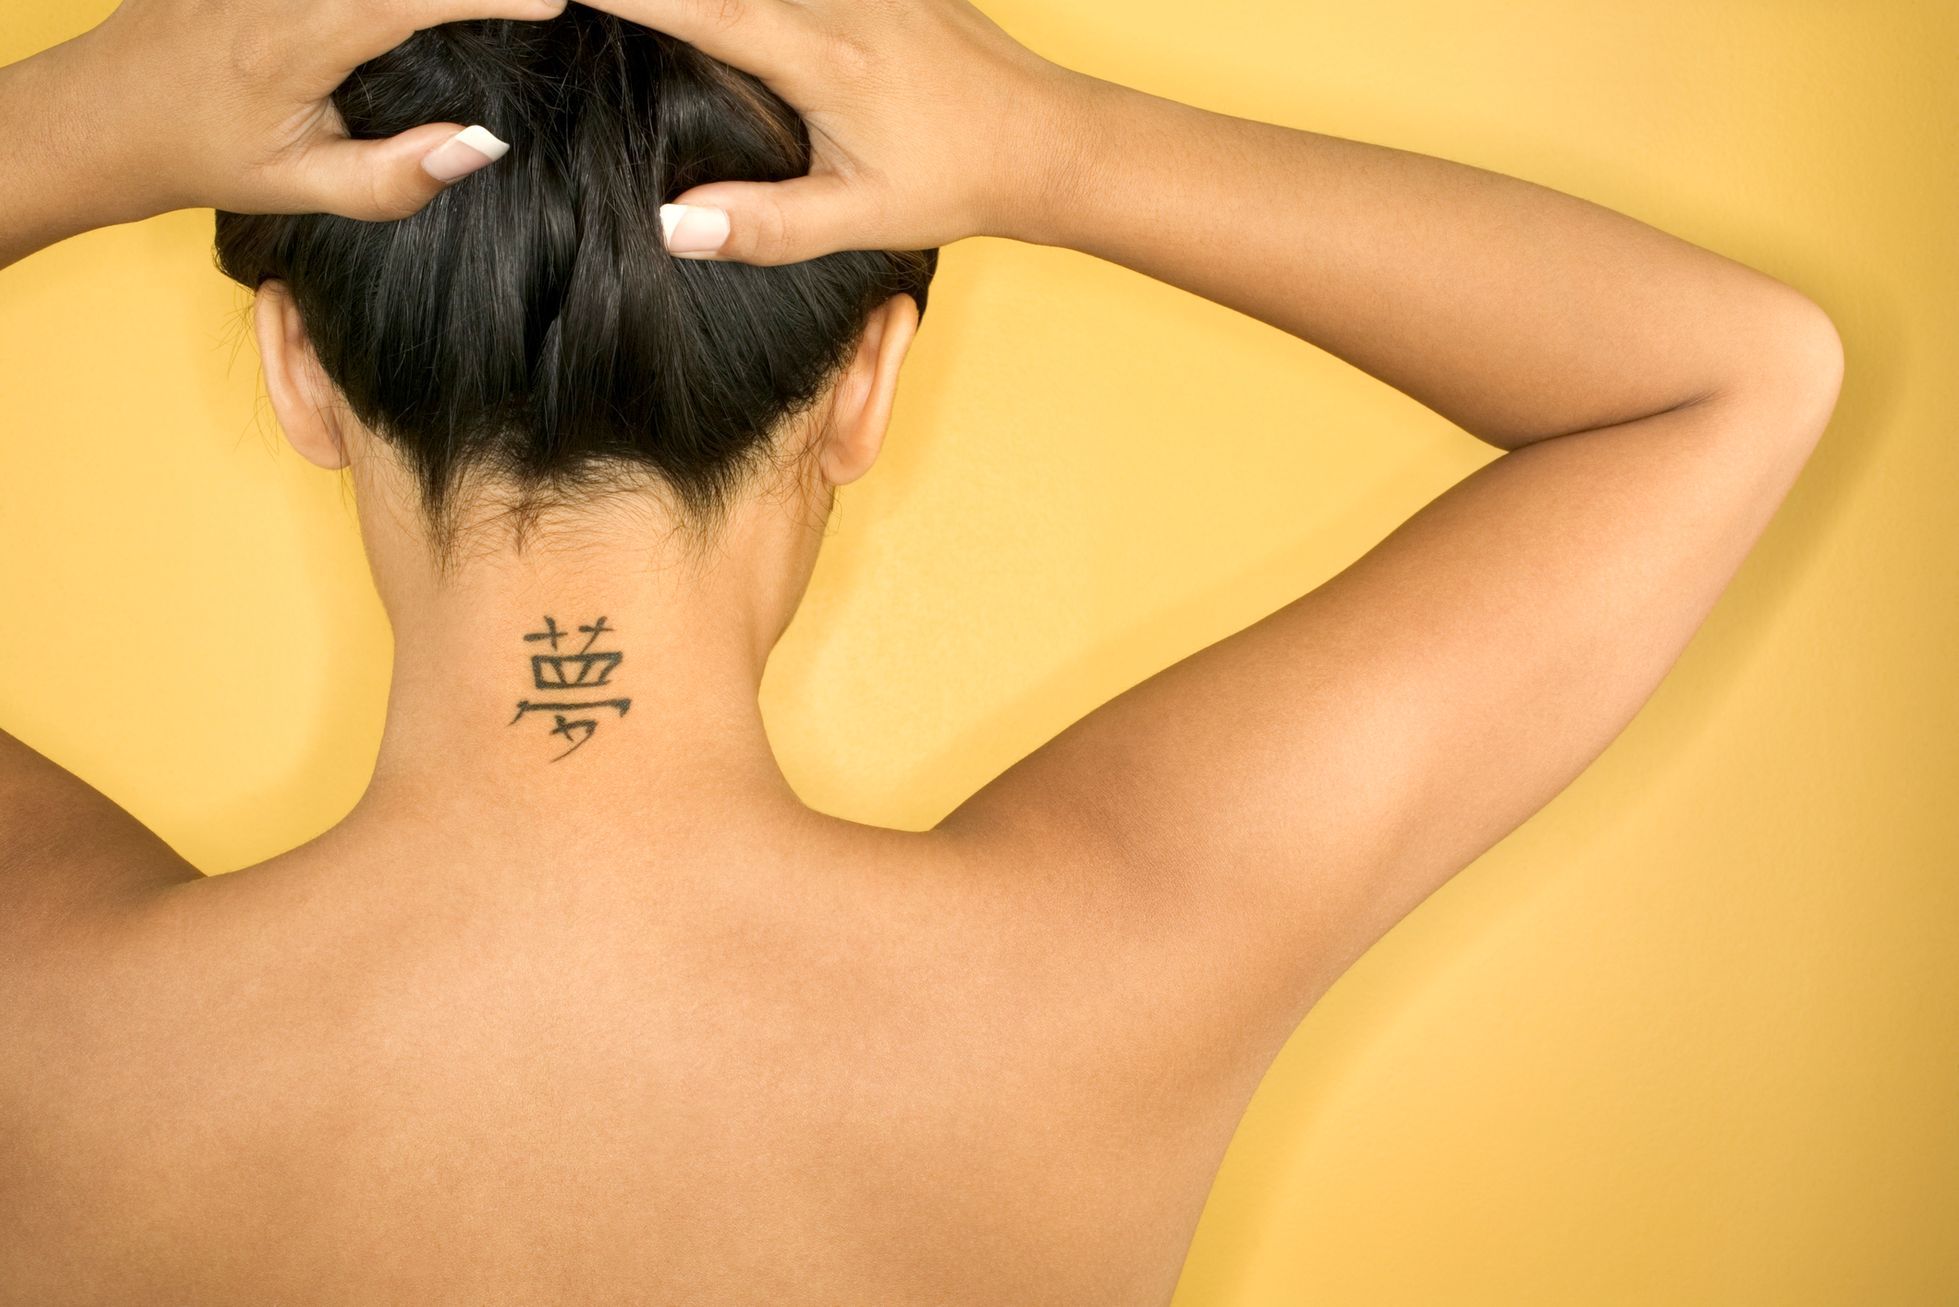 Co vede lidi k tetování?